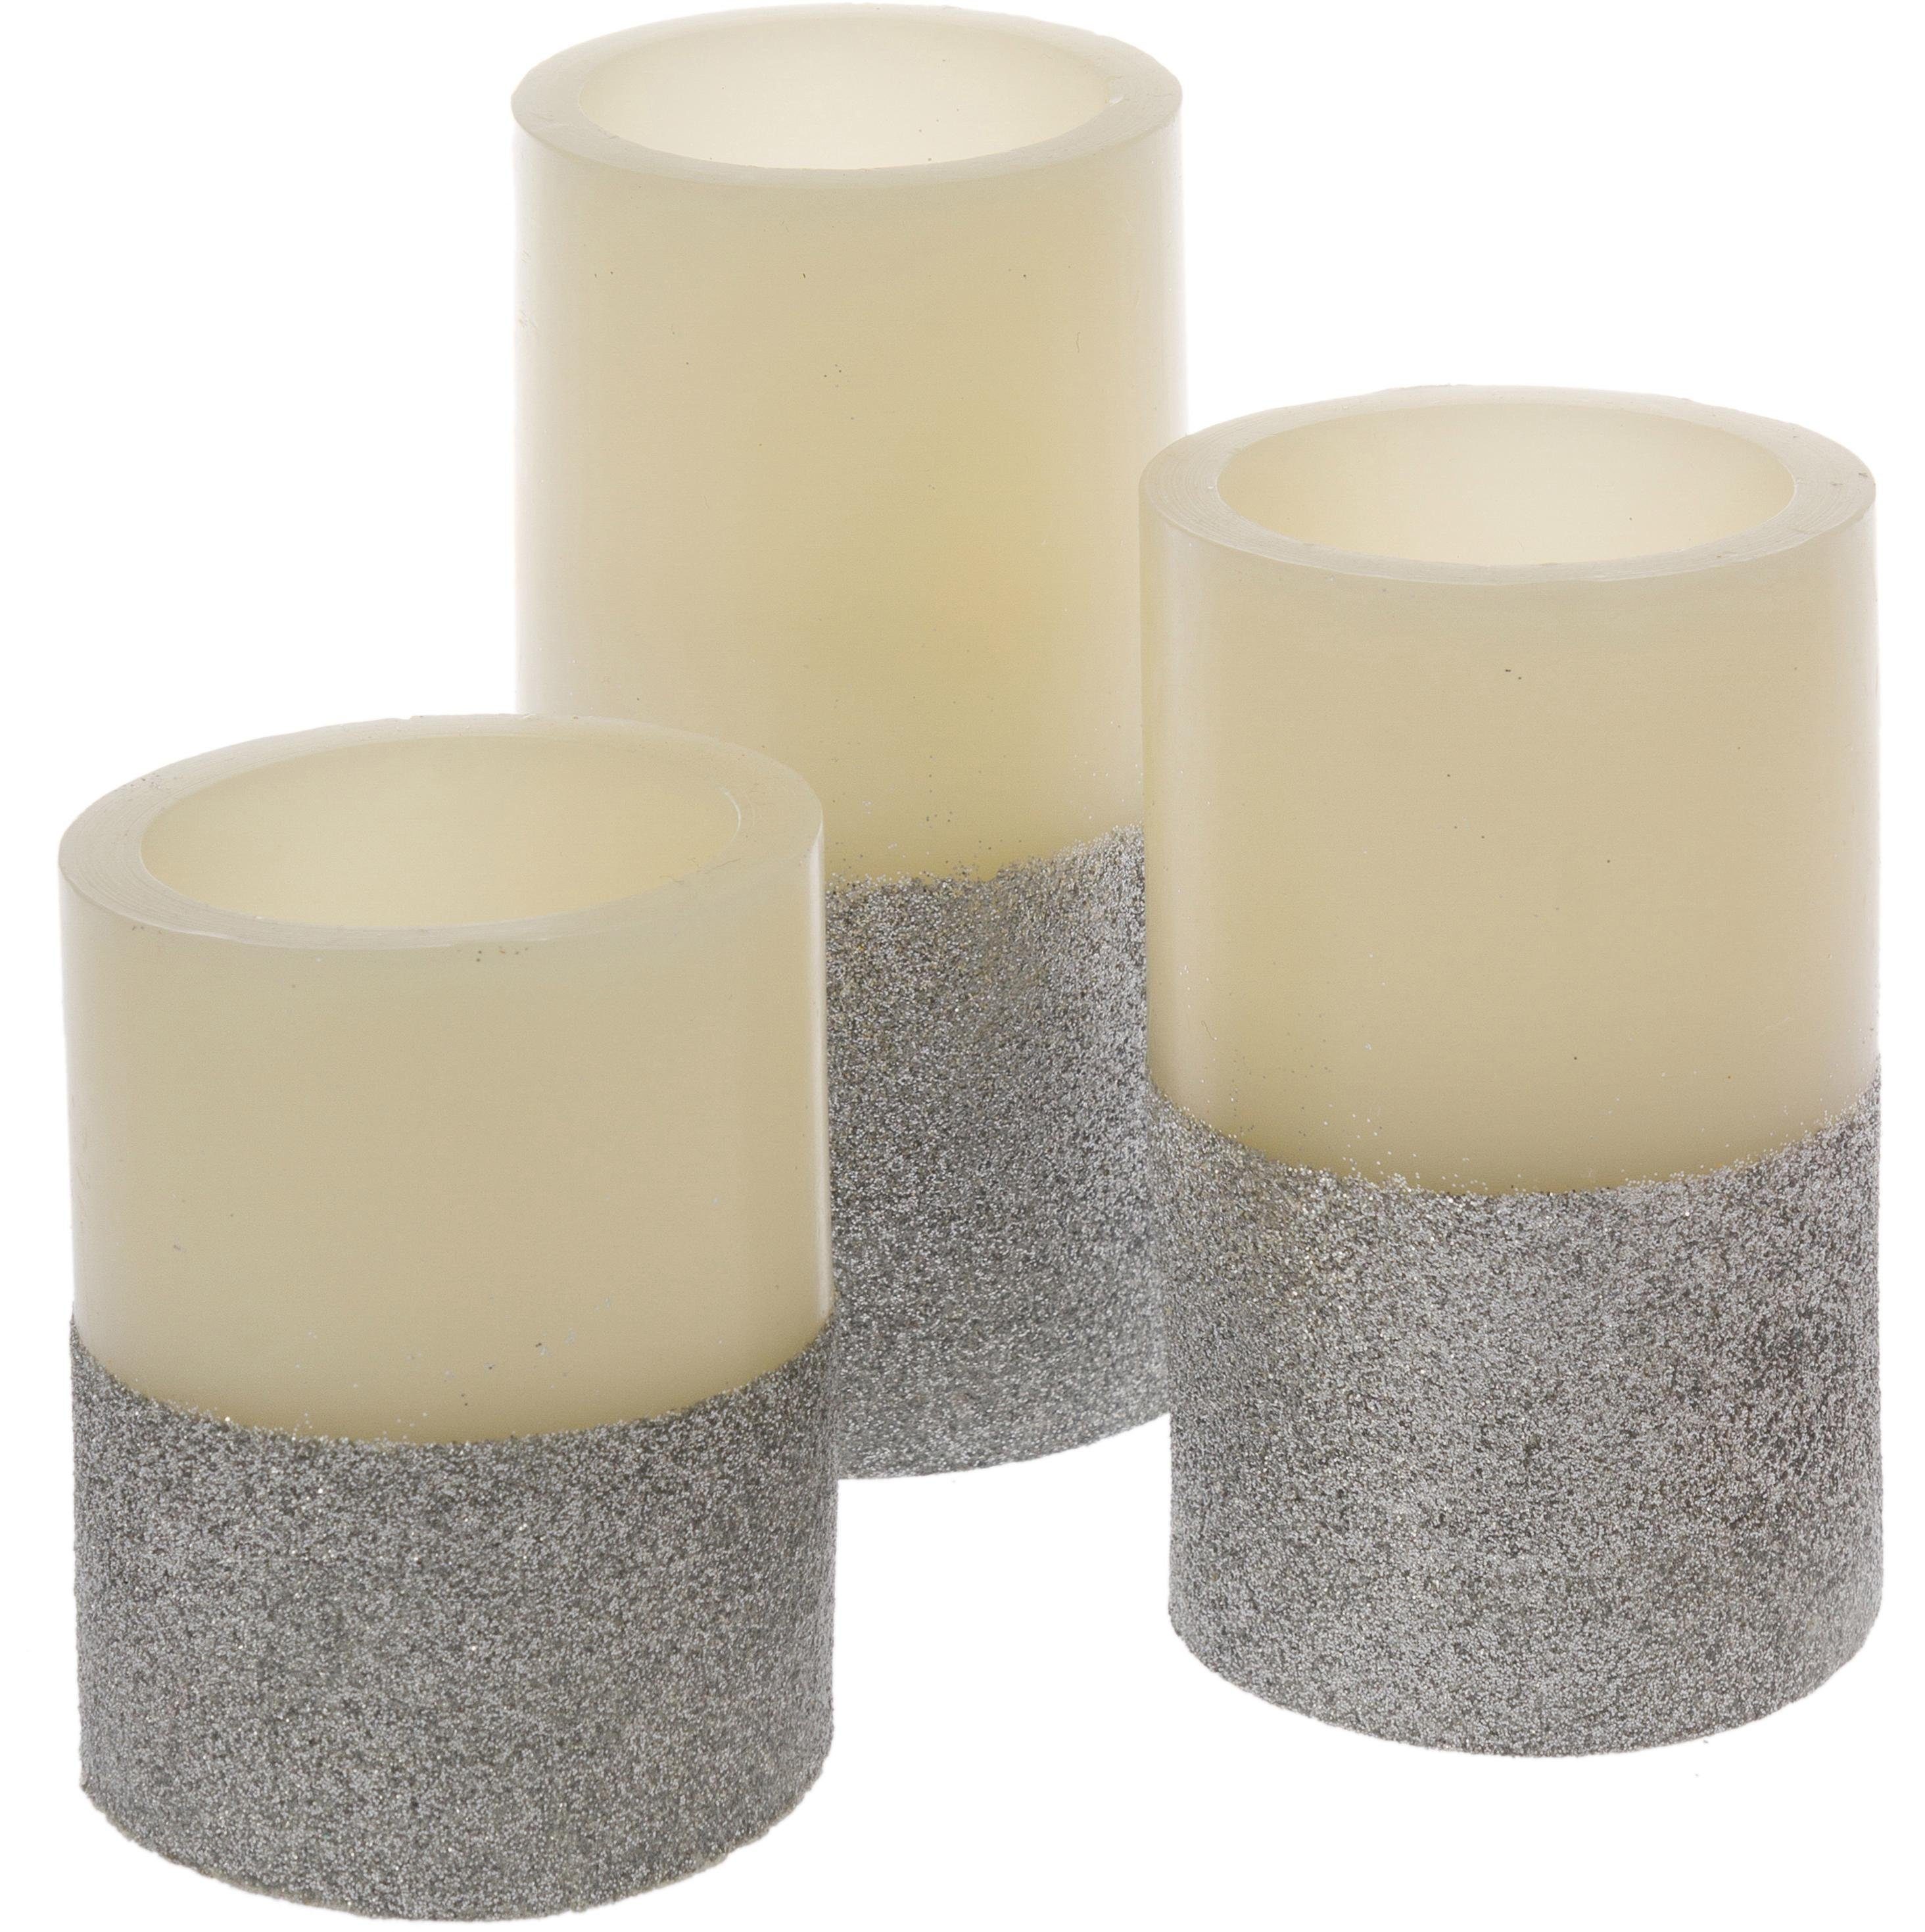 Echte Qualität Myflair Möbel & Silver 3-tlg) cremefarben/silberfarben Accessoires Weihnachtsdeko (Set, LED-Kerze Star